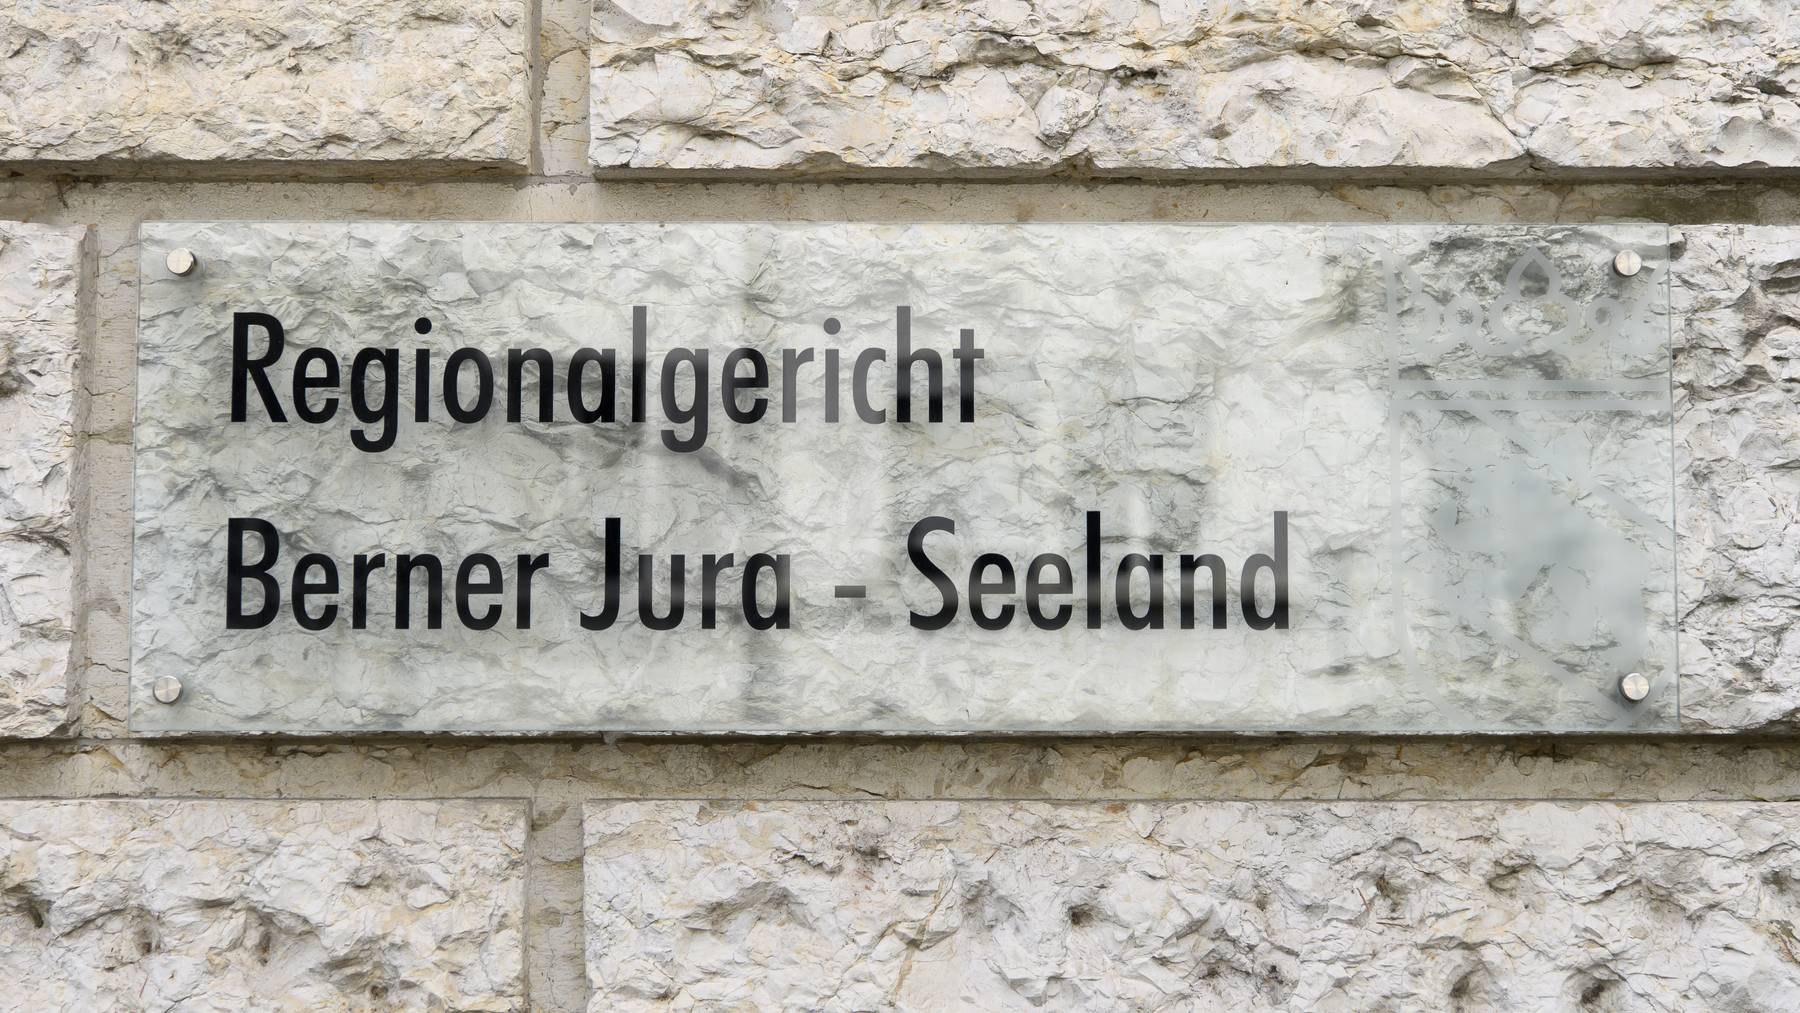 Vier Kurden müssen sich vor dem Regionalgericht Berner Jura Seeland verantworten.